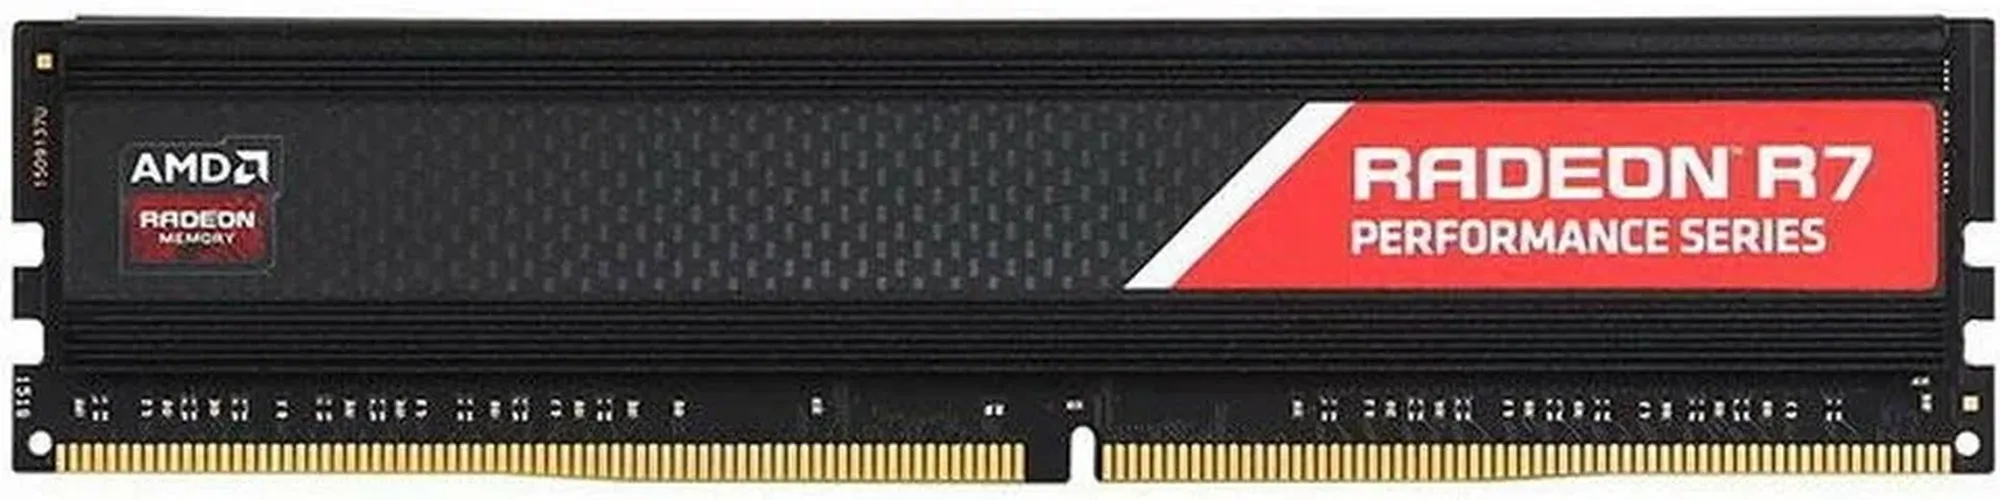 Оперативная память AMD Radeon R748G2400U2S DDR4 | 8 GB |2400 МГц, фото